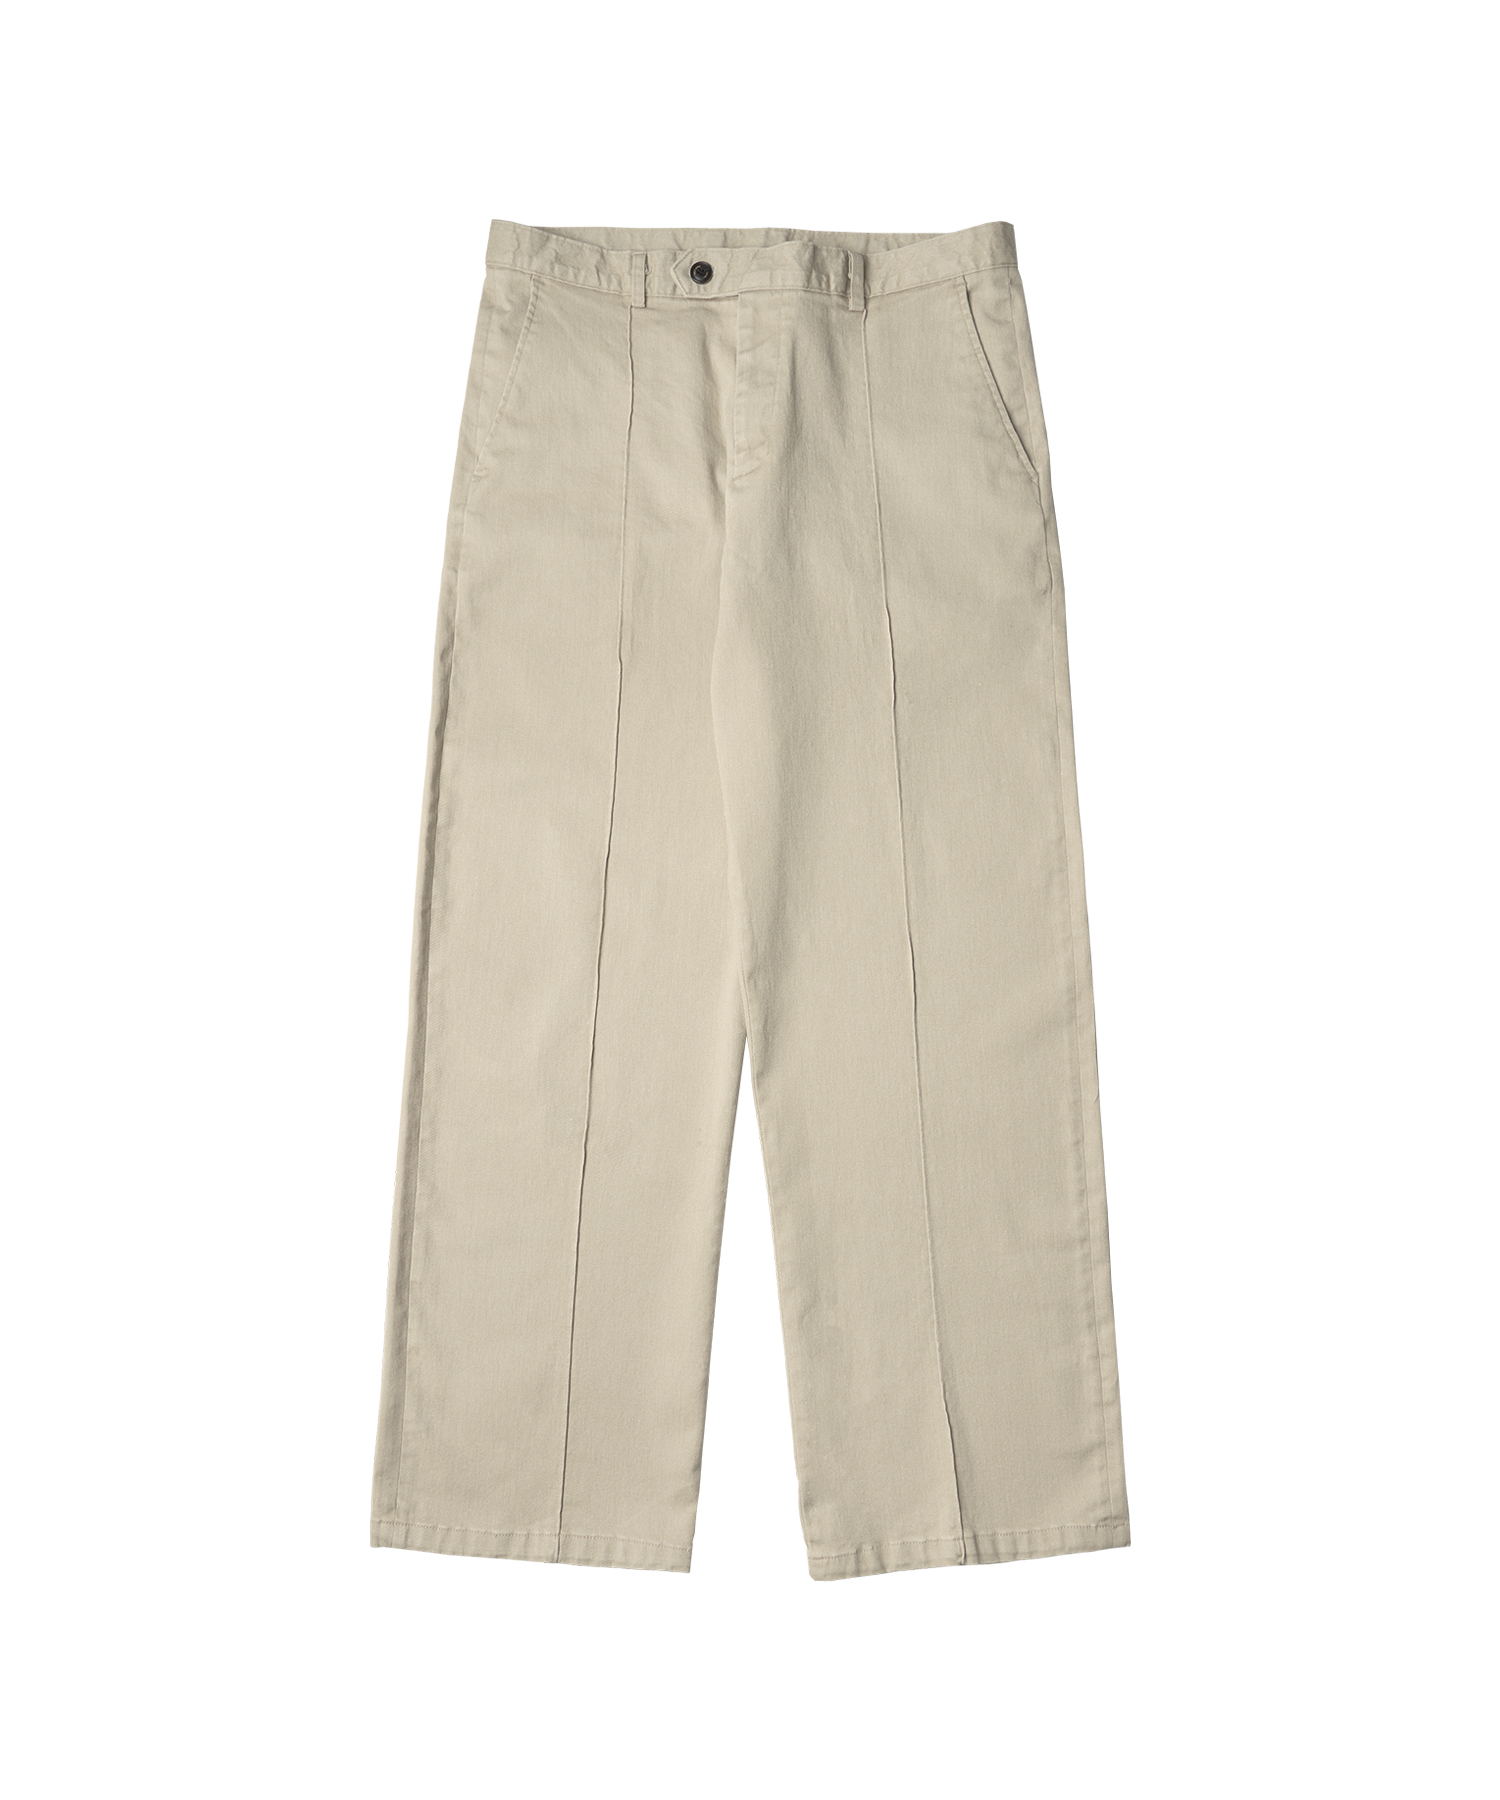 P10030 Vintage straight pants_Light beige